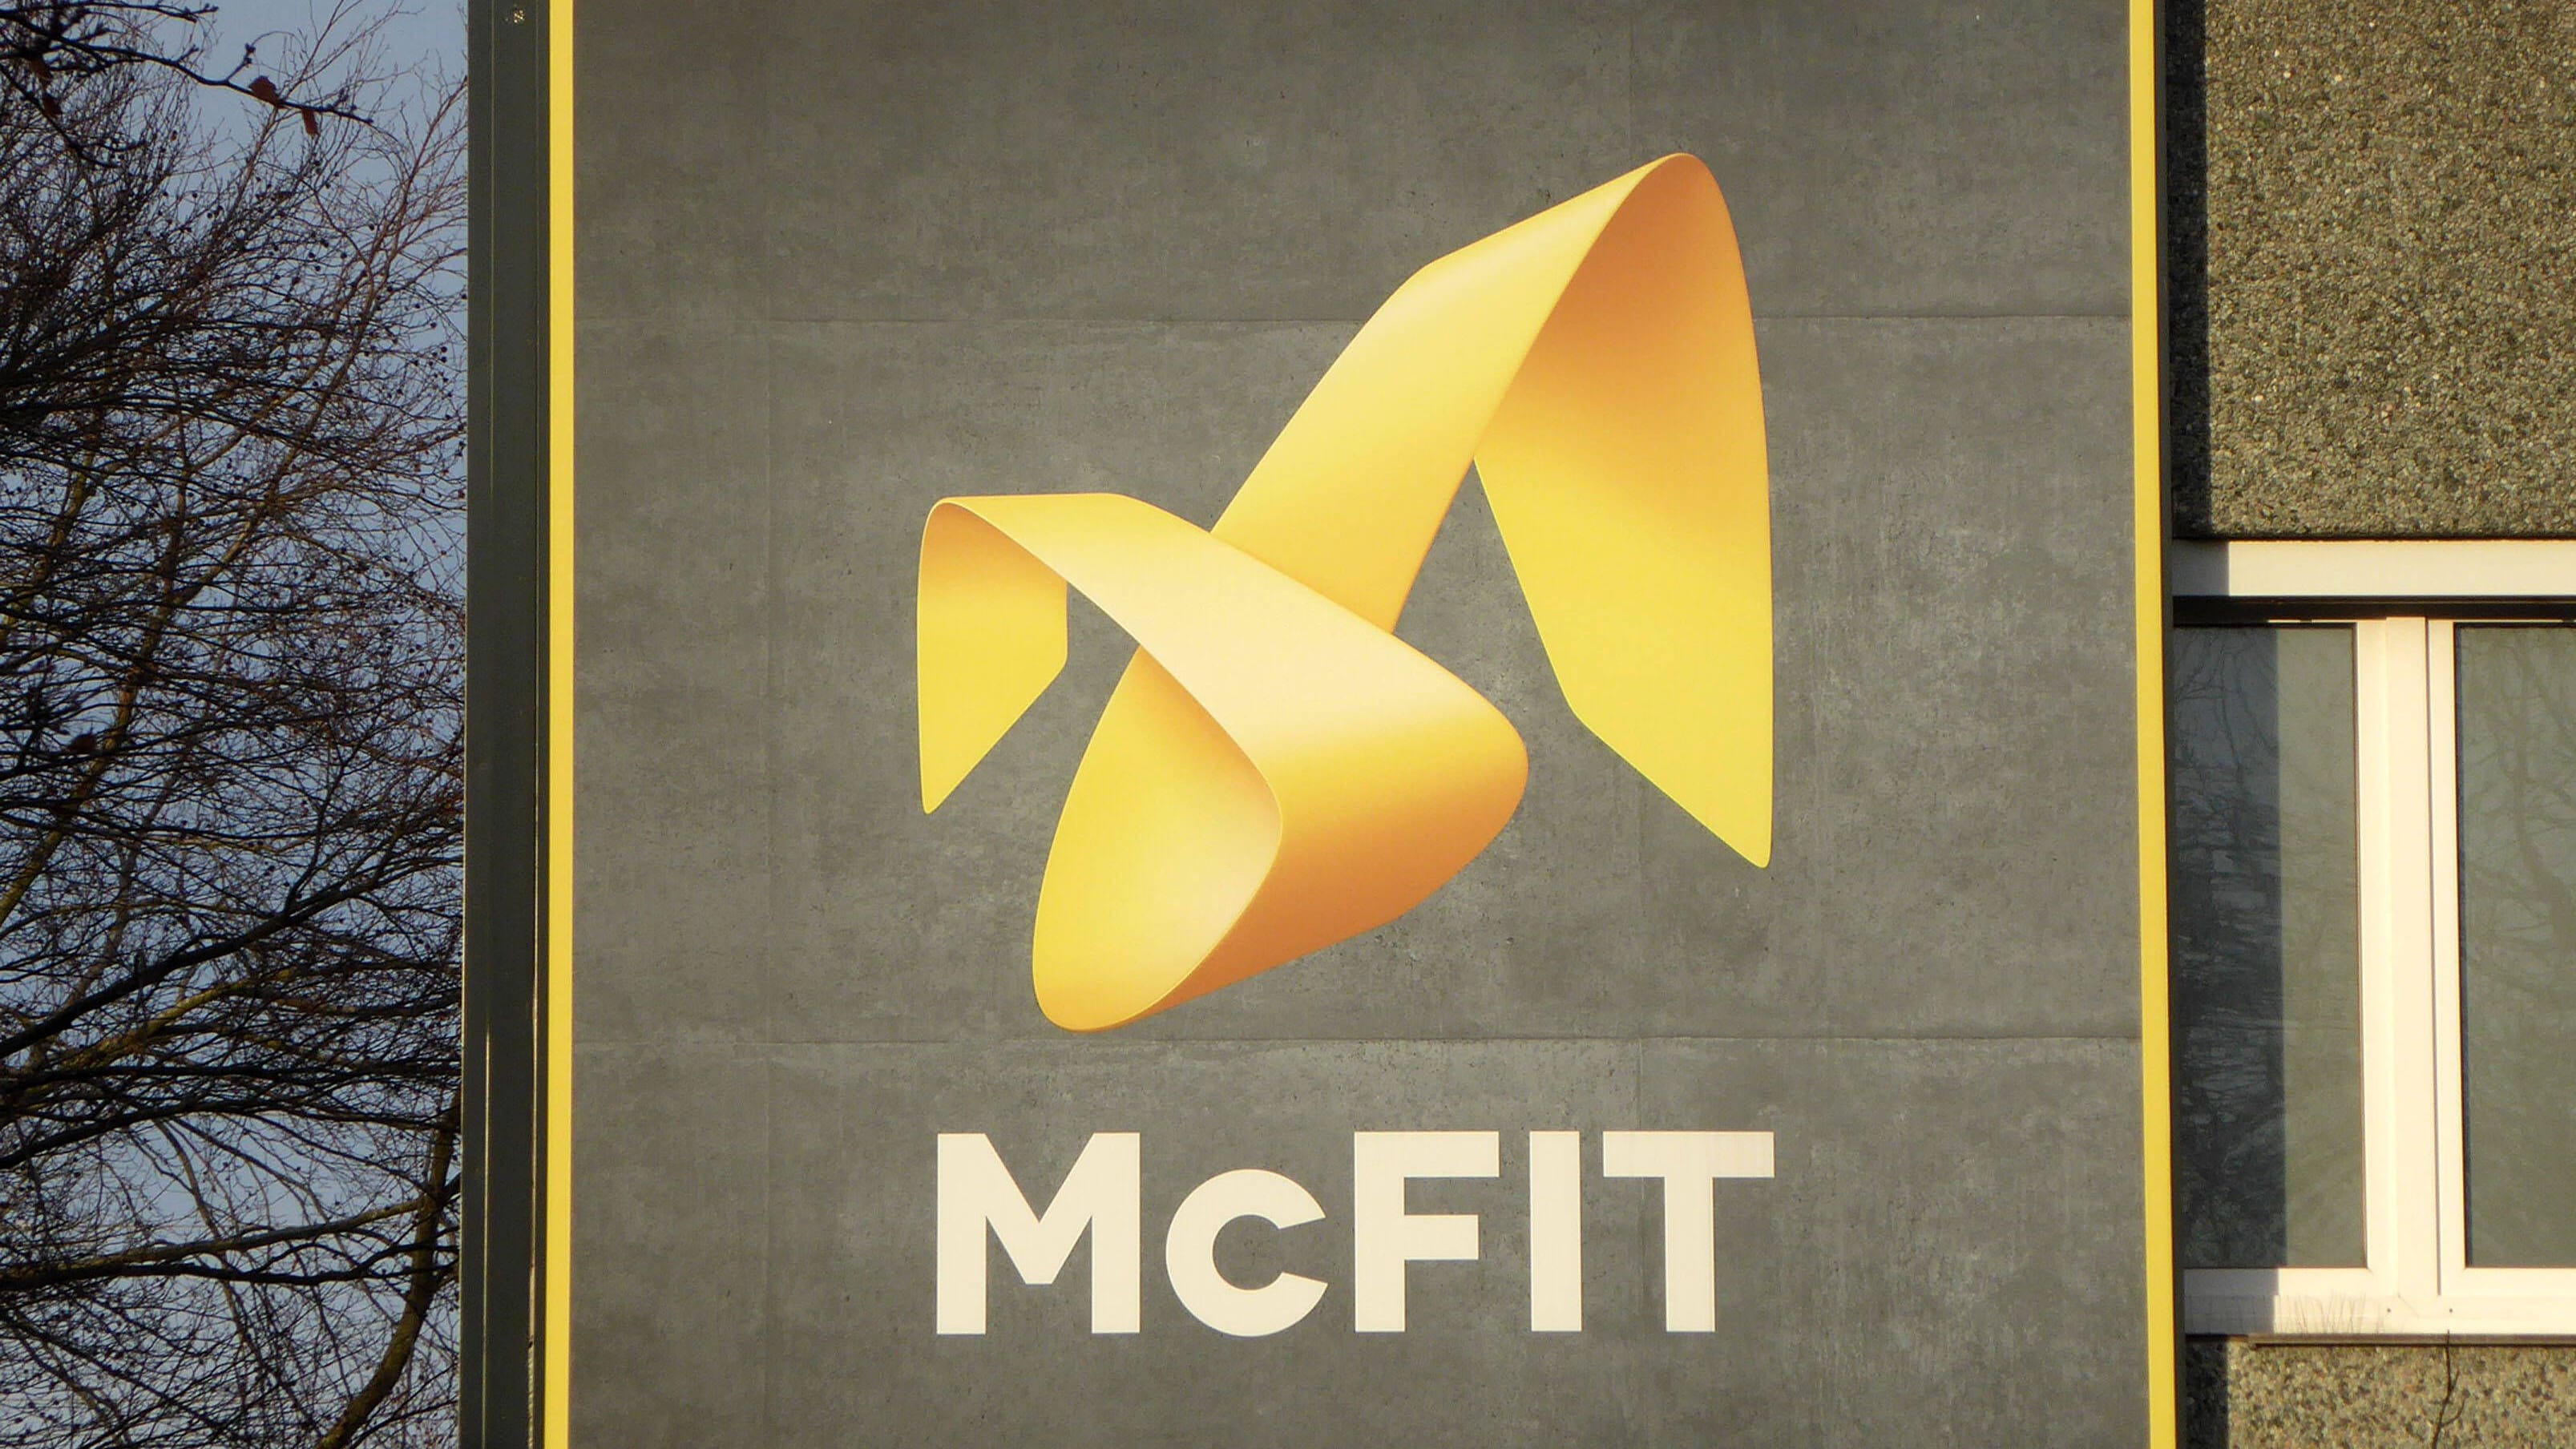 McFit: Niederlage vor Gericht wegen Preiserhöhung per Drehkreuz